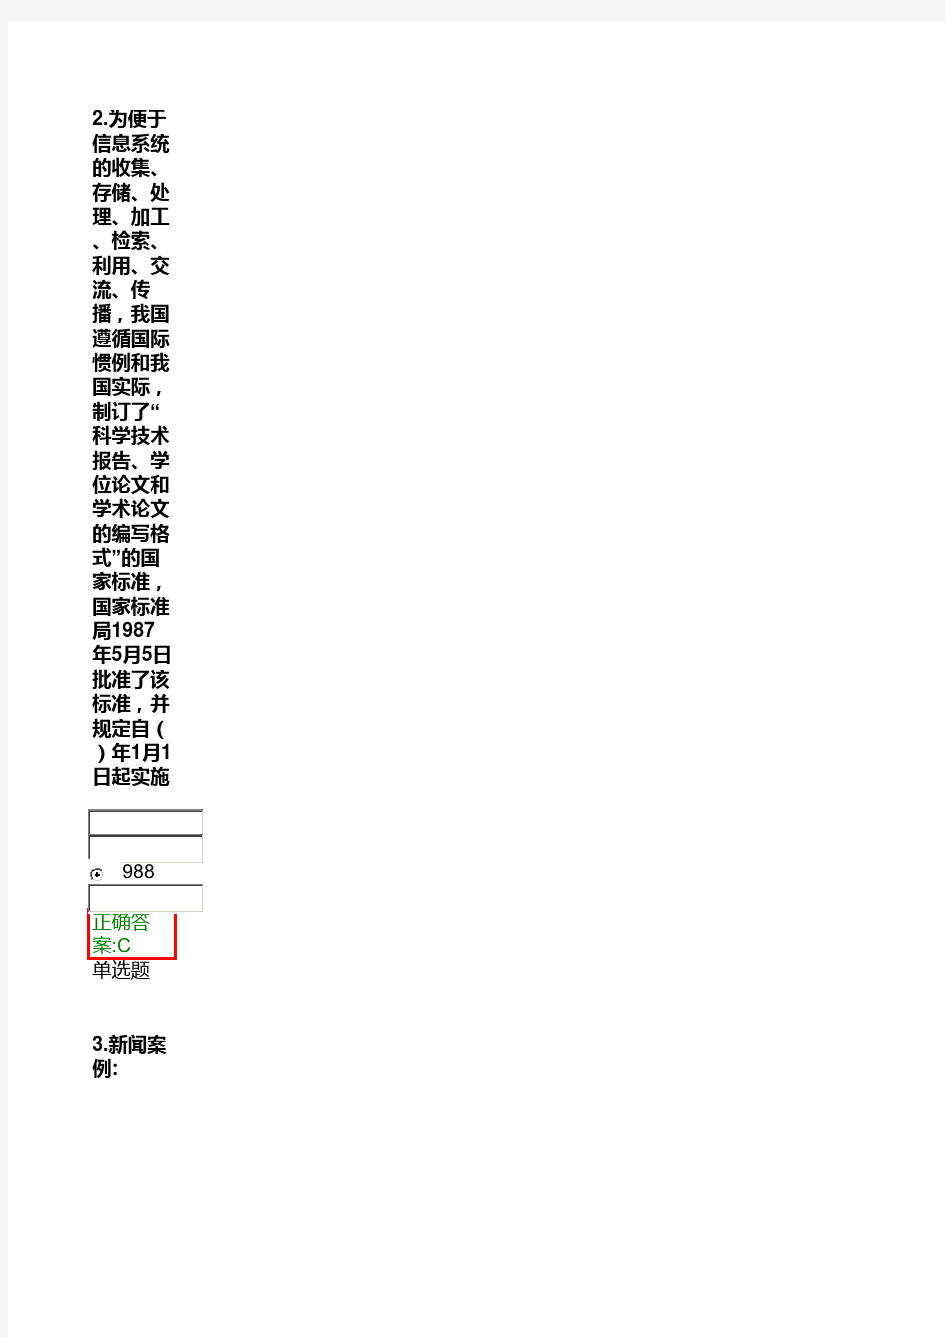 2015浙江大学远程教育 应用写作作业在线作业答案